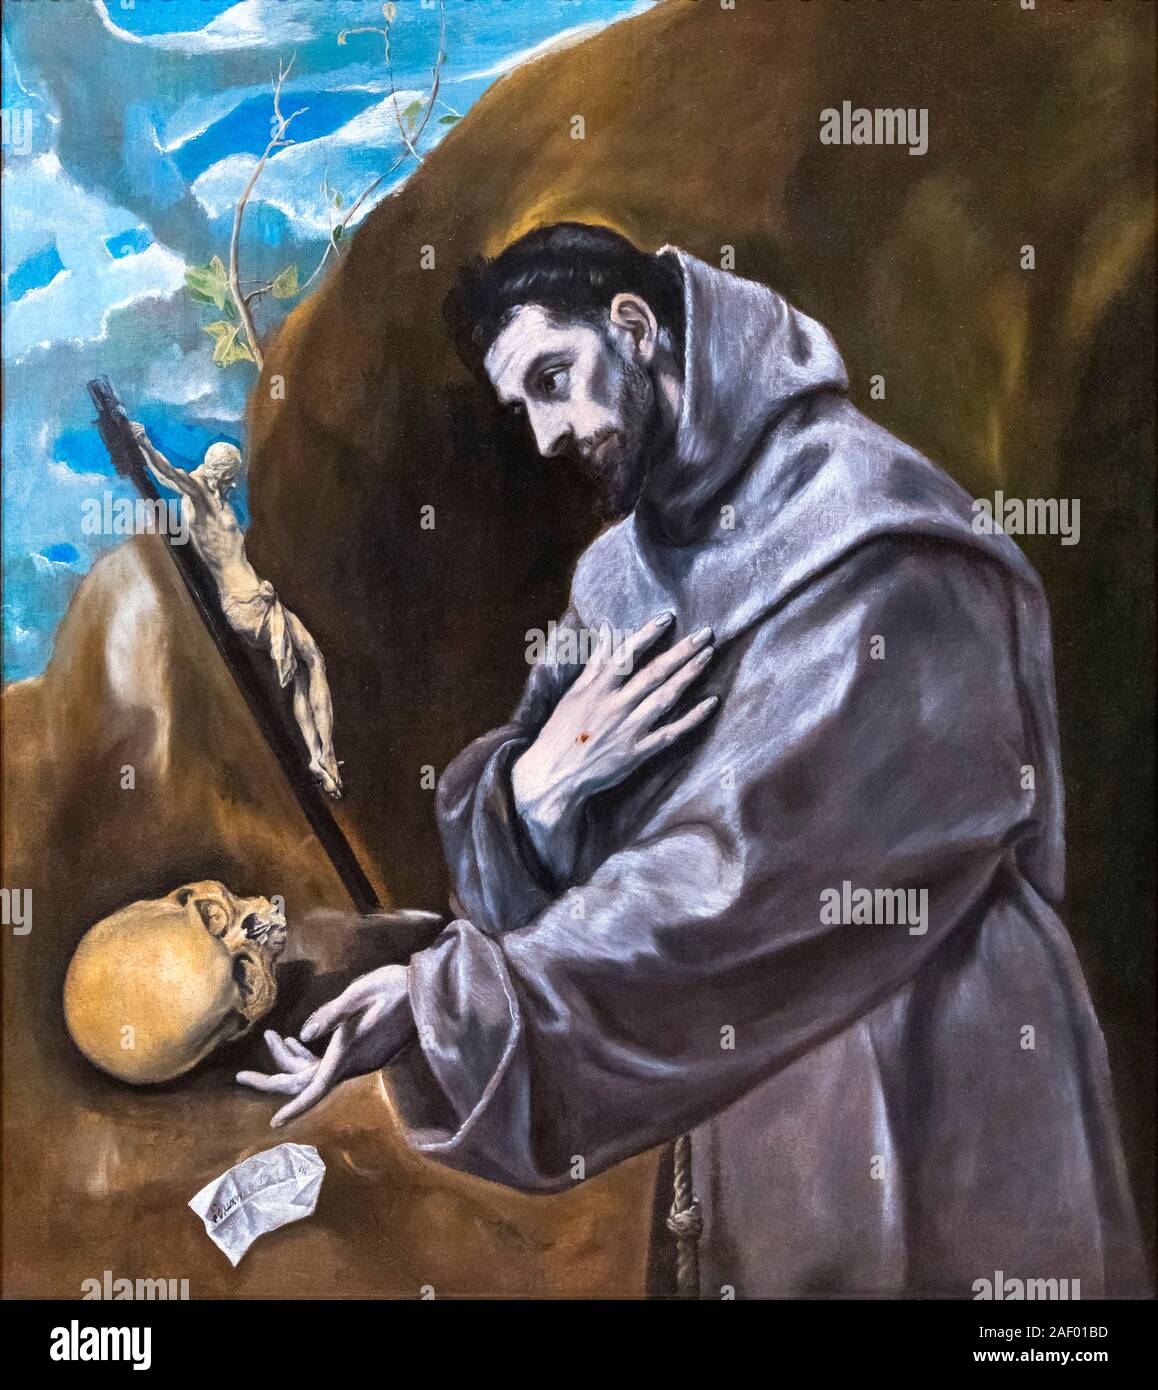 Saint François en prière par El Greco, Domenikos Theotokopoulos (1541-1614), huile sur toile, c.1580-85 Banque D'Images